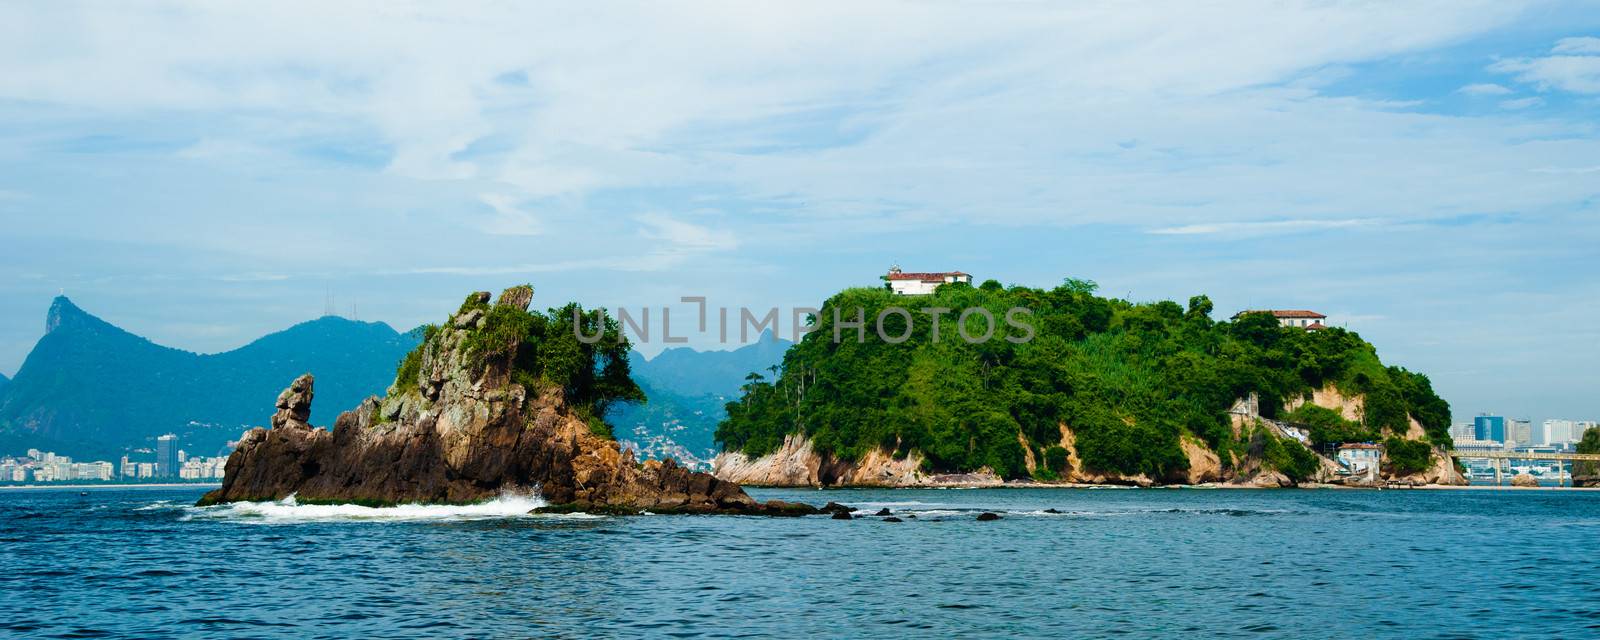 Island of Boa Viagem in the city of Niter��i, state of Rio de Janeiro.